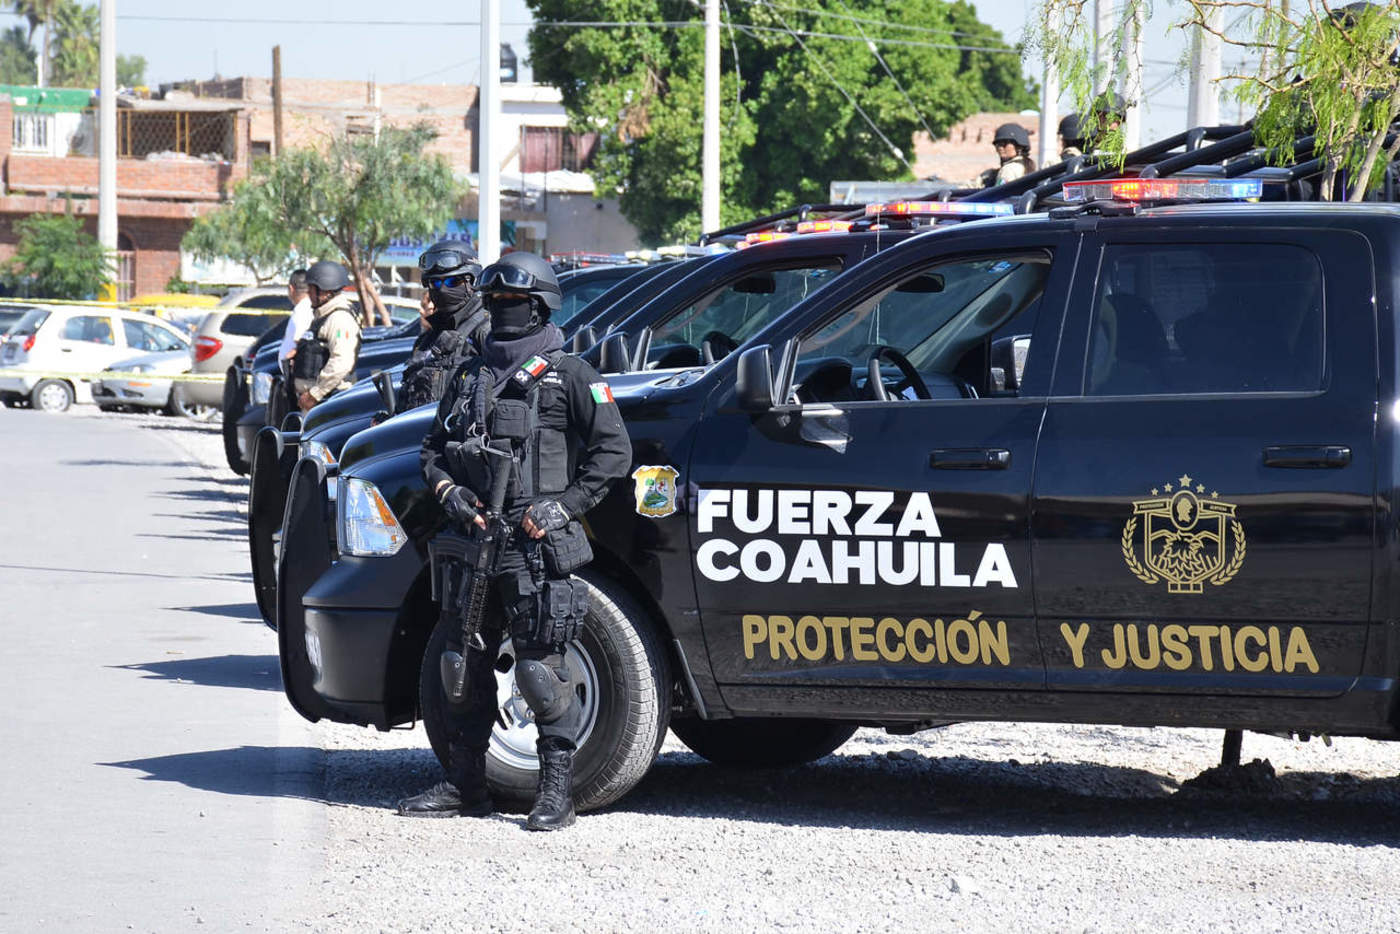 Fuerza Coahuila a la cabeza en lista de quejas ante CDHEC